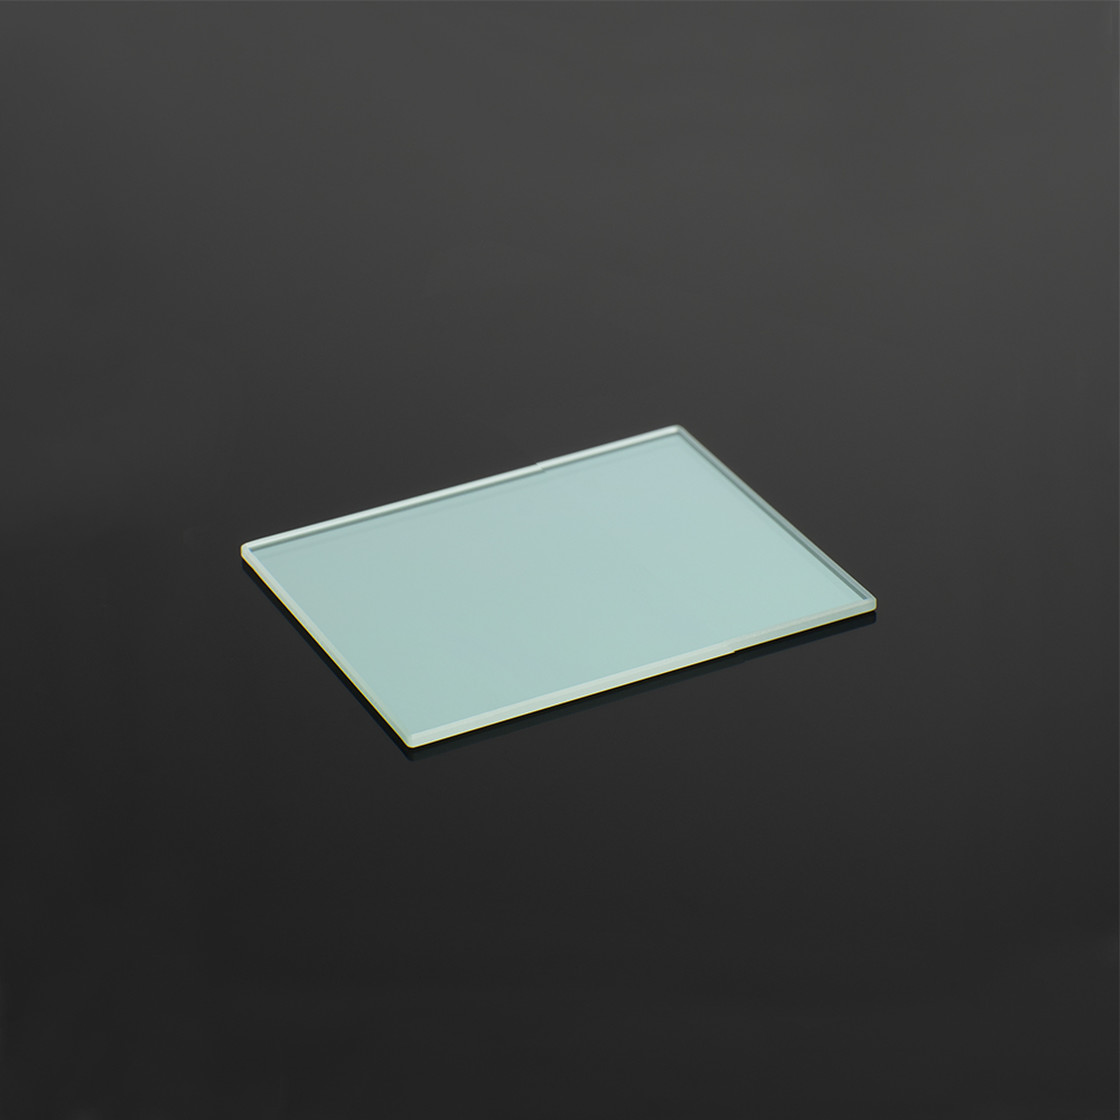 Teildurchlässiger Vorderflächen-Glasspiegel, 30 x 40 mm